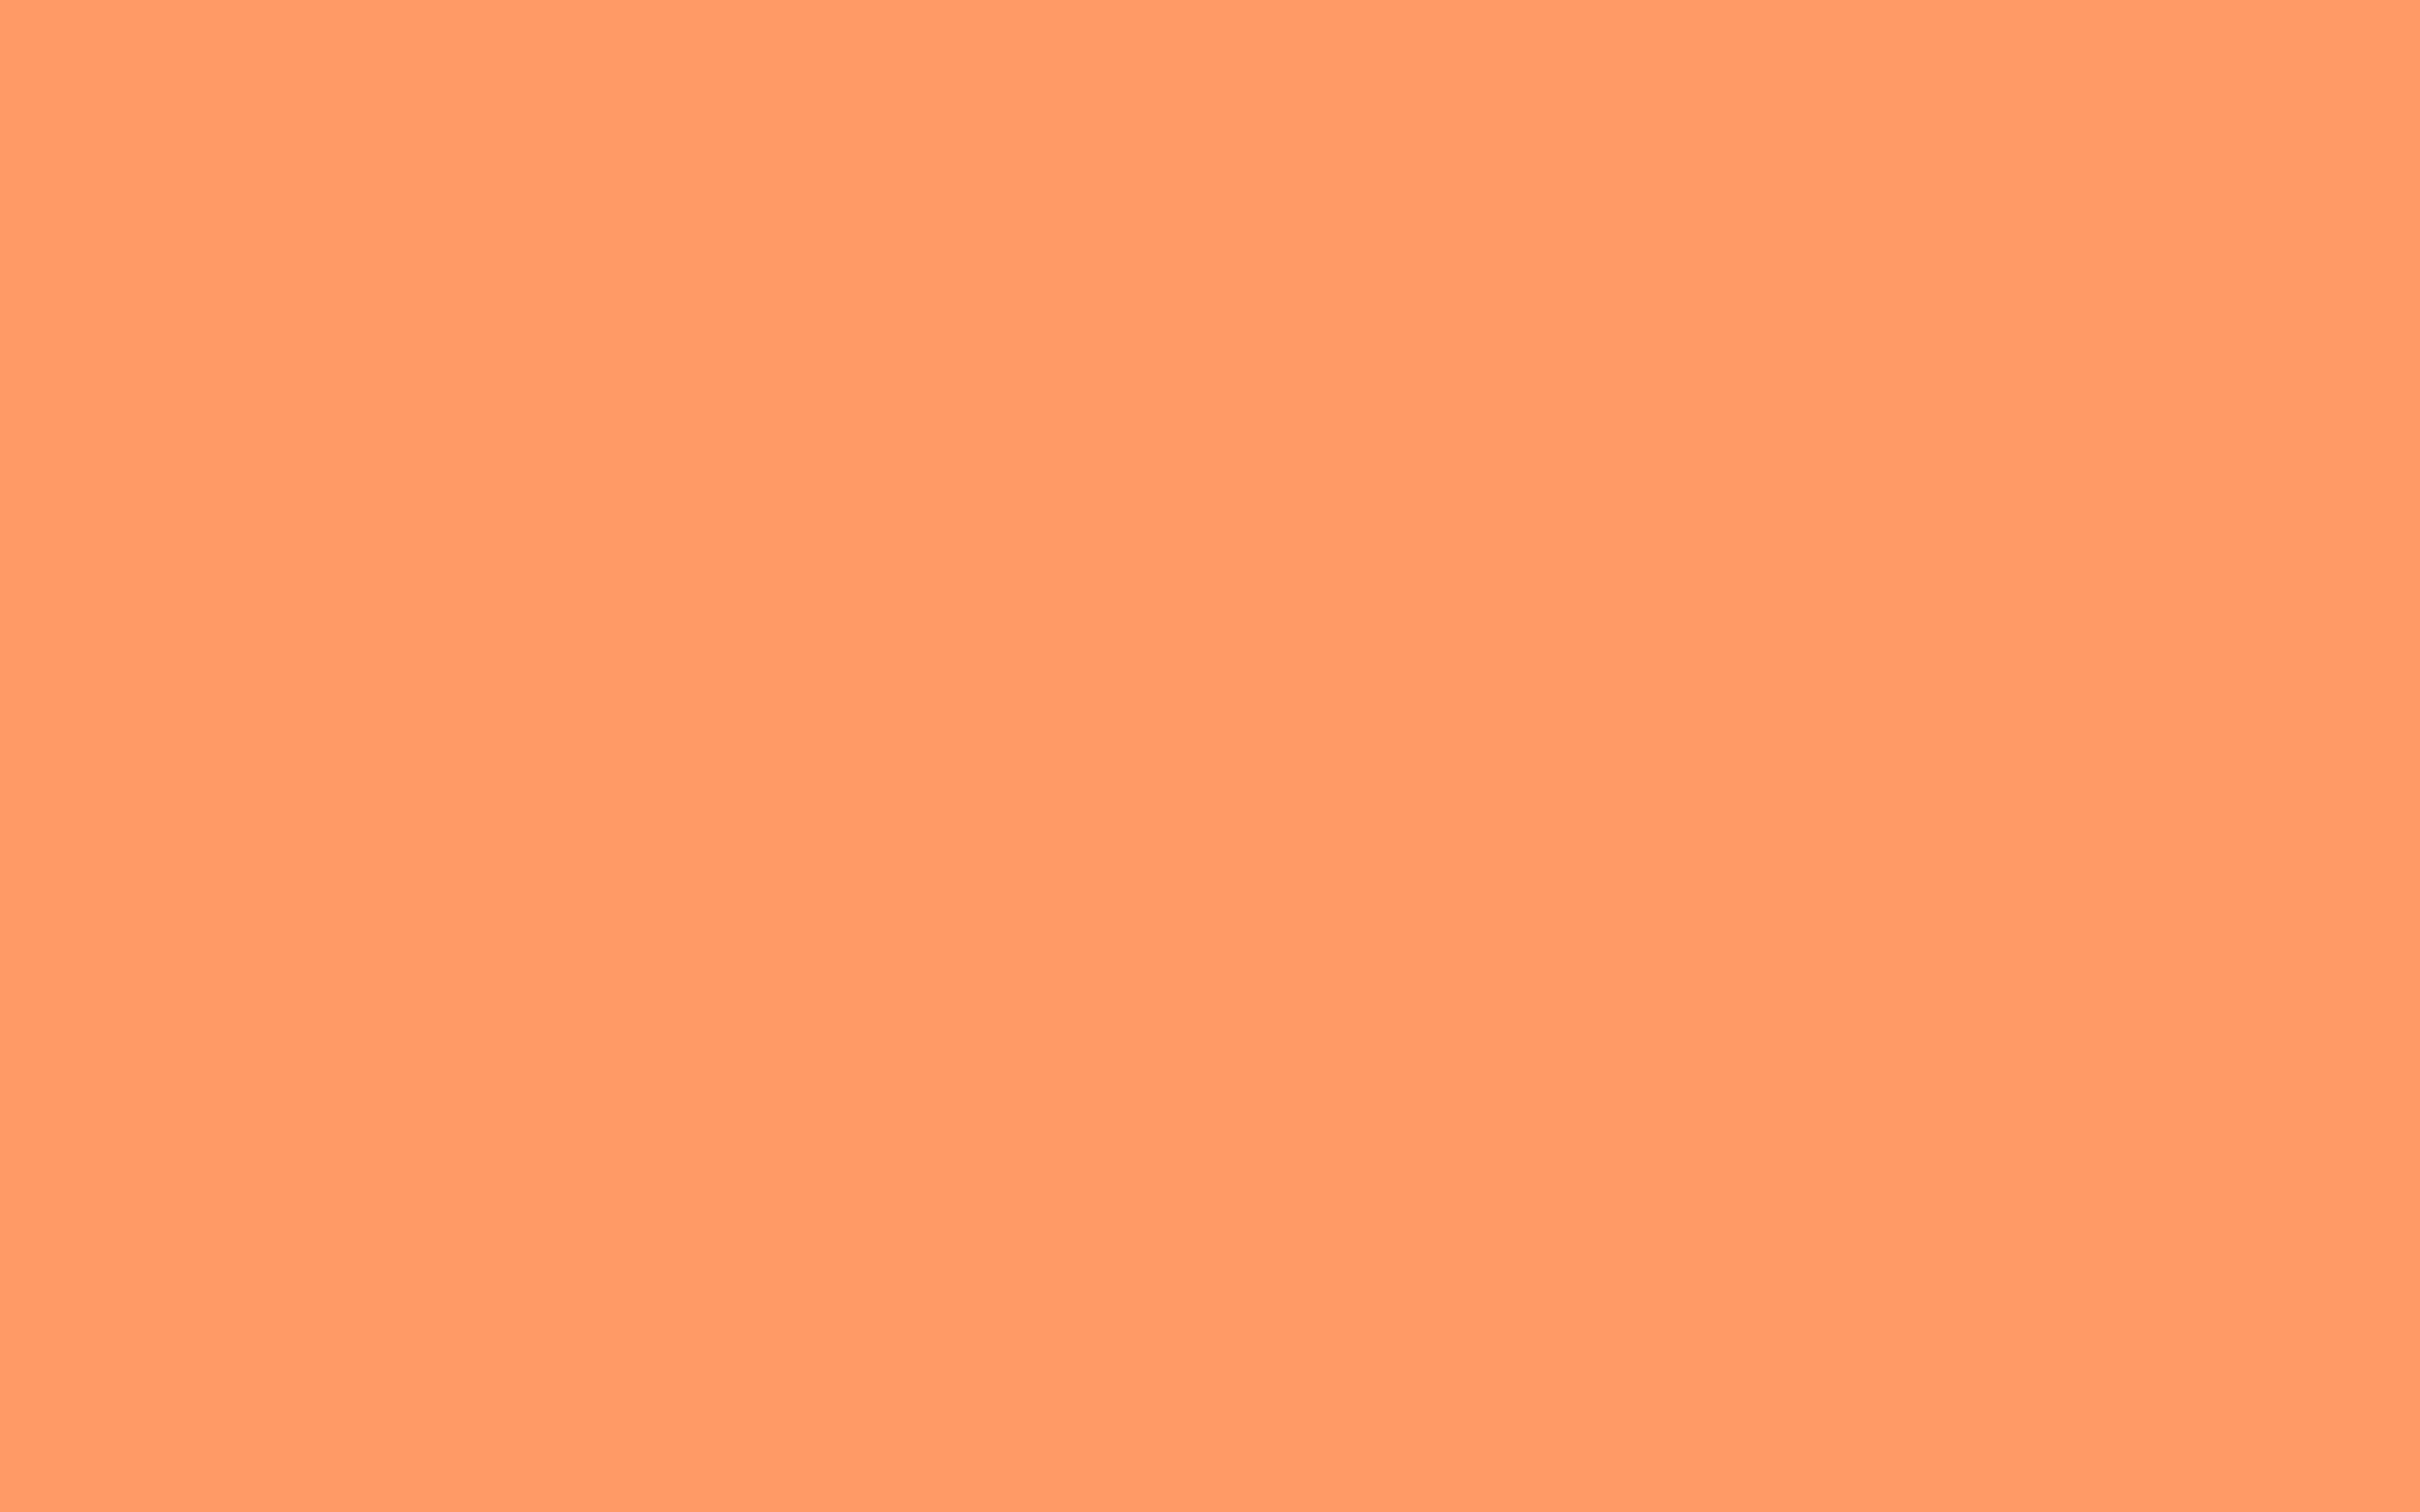 Pink Orange Solid Color Background. //Solids